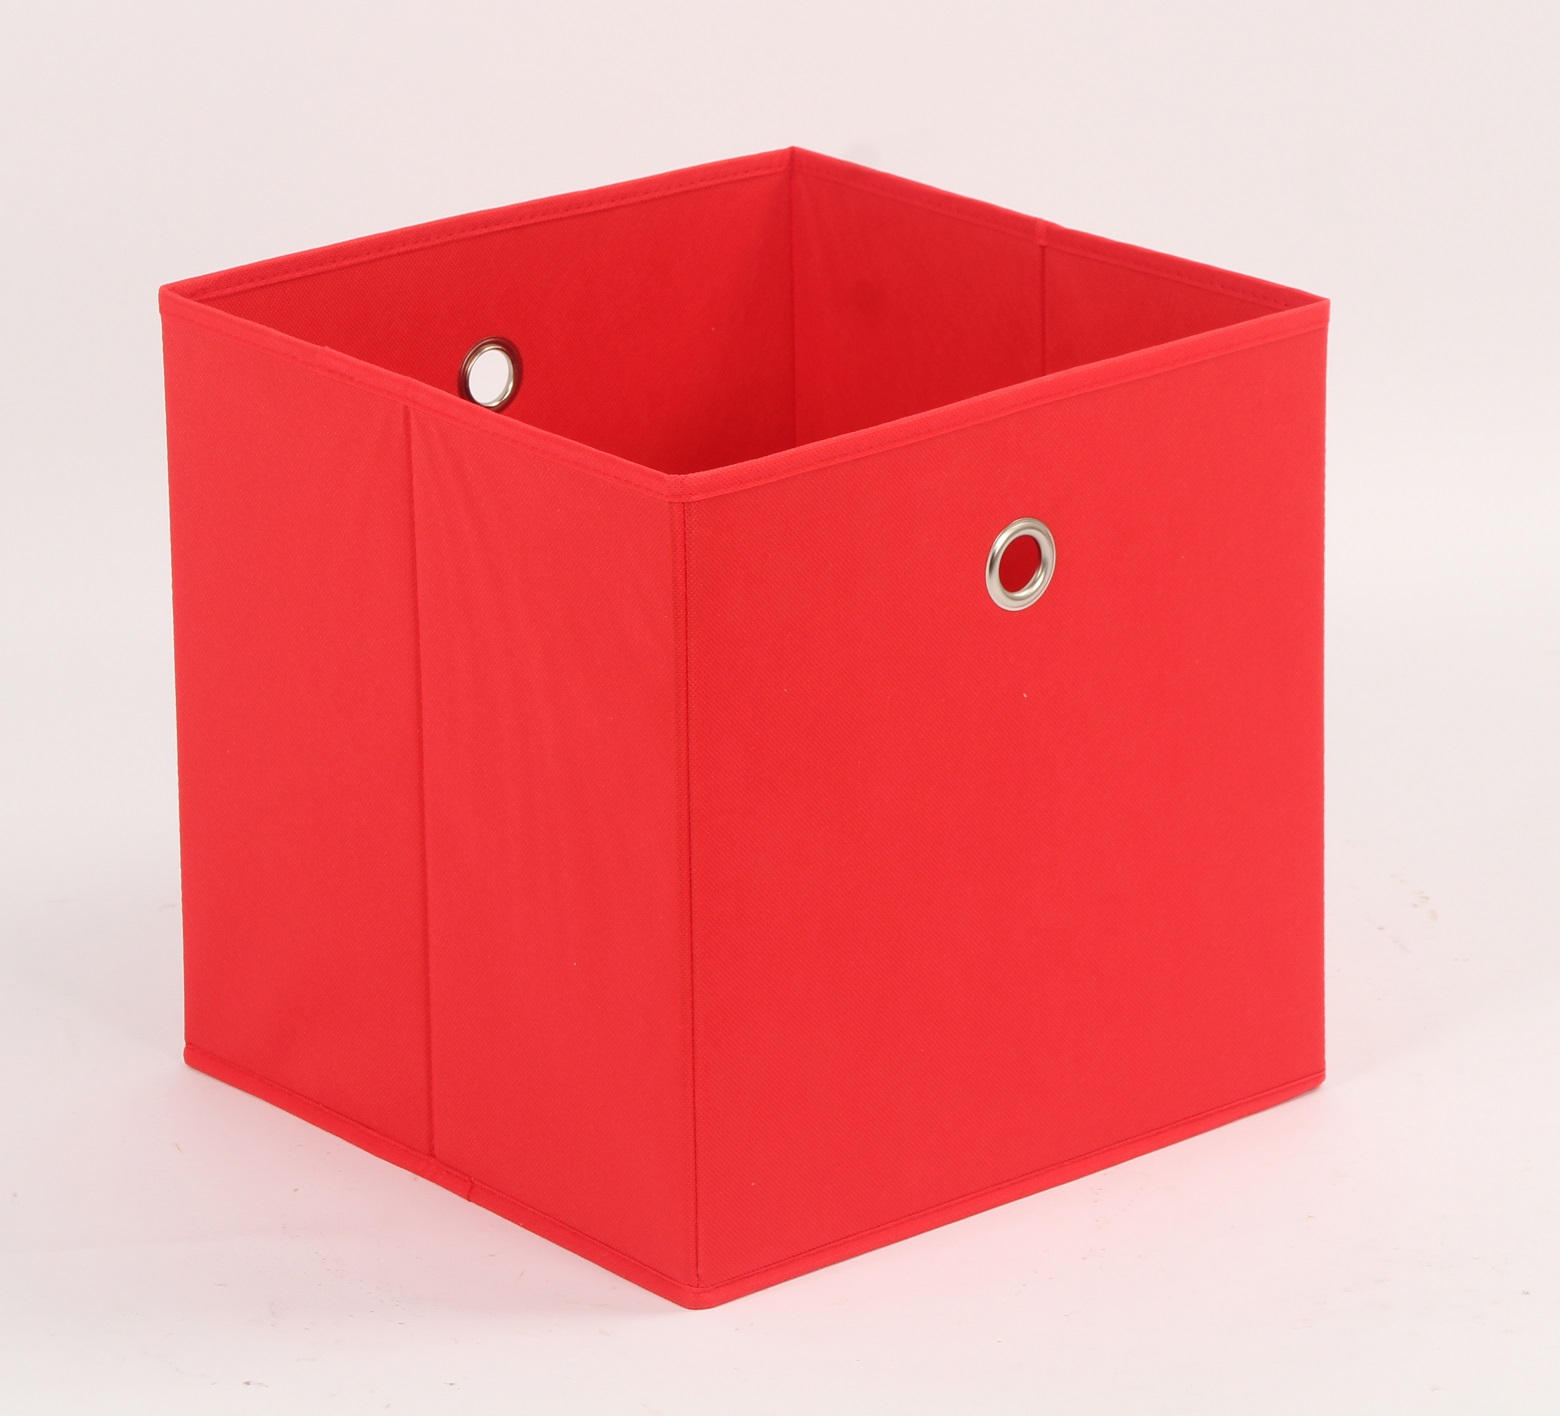 SKLADACÍ BOX, kov, textil, kartón, 32/32/32 cm - červená, Design, kartón/kov (32/32/32cm) - Carryhome